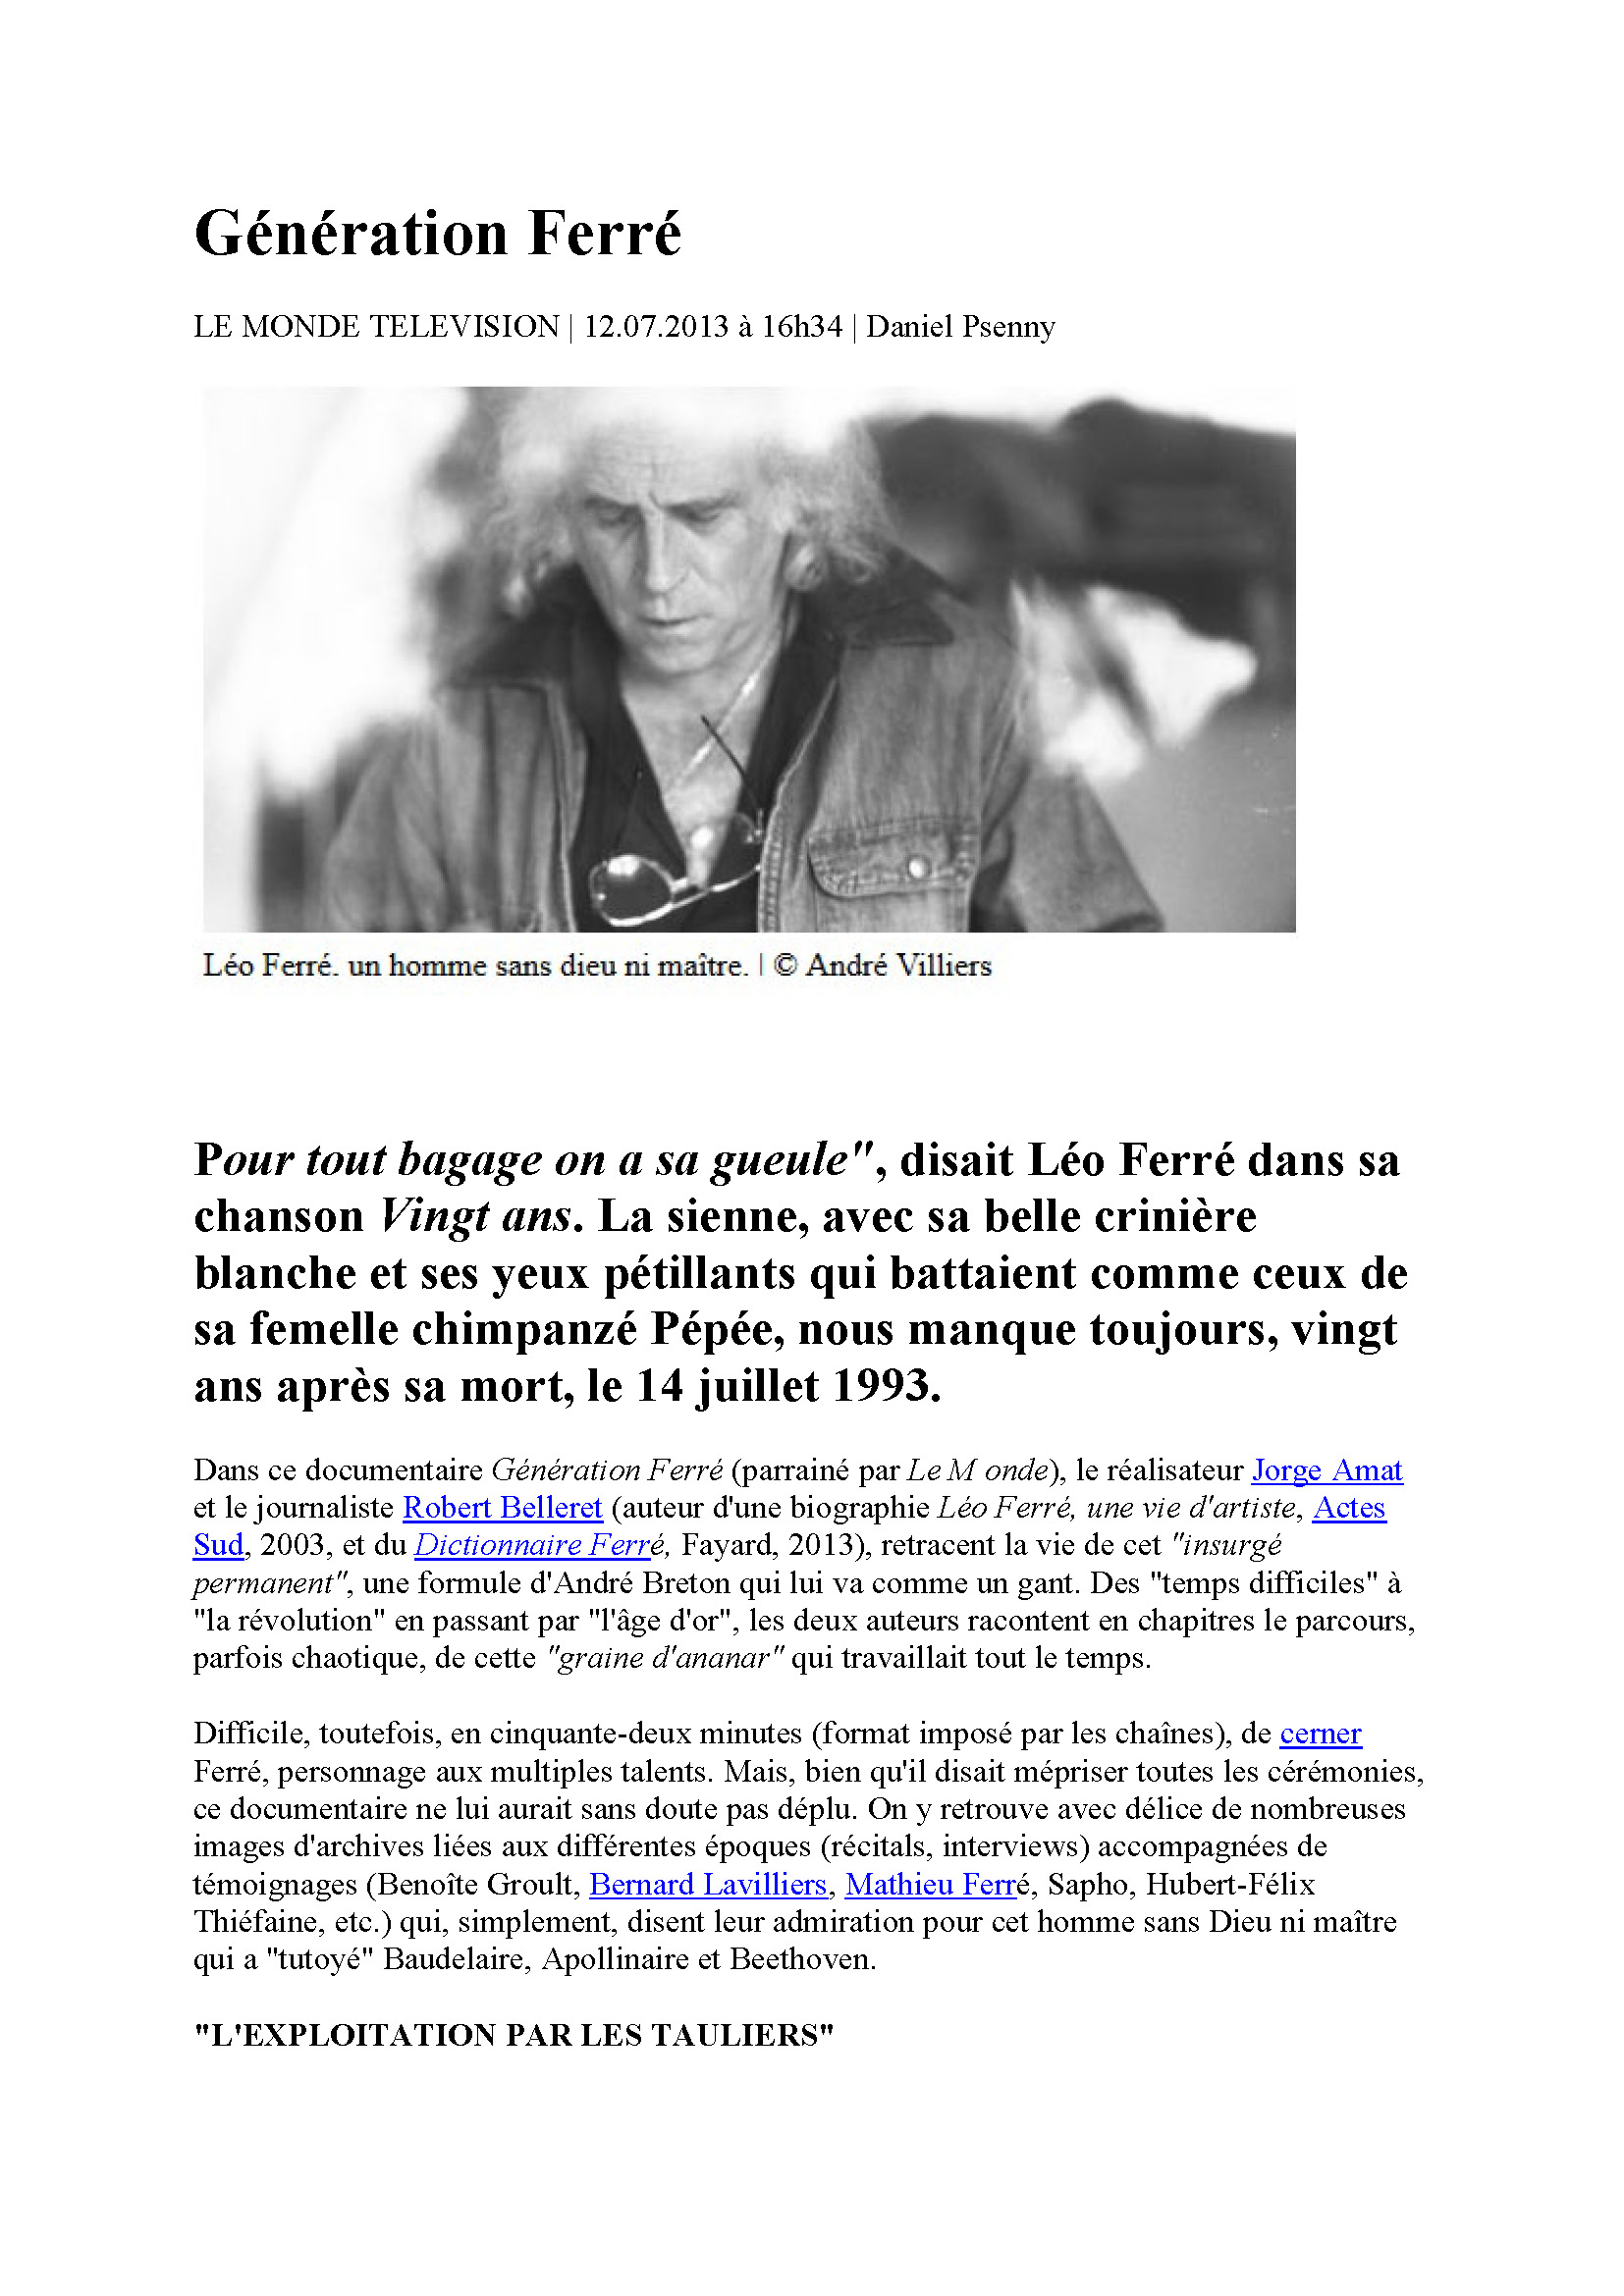 Le Monde Télévision du 12/07/2013 Génération-Ferré